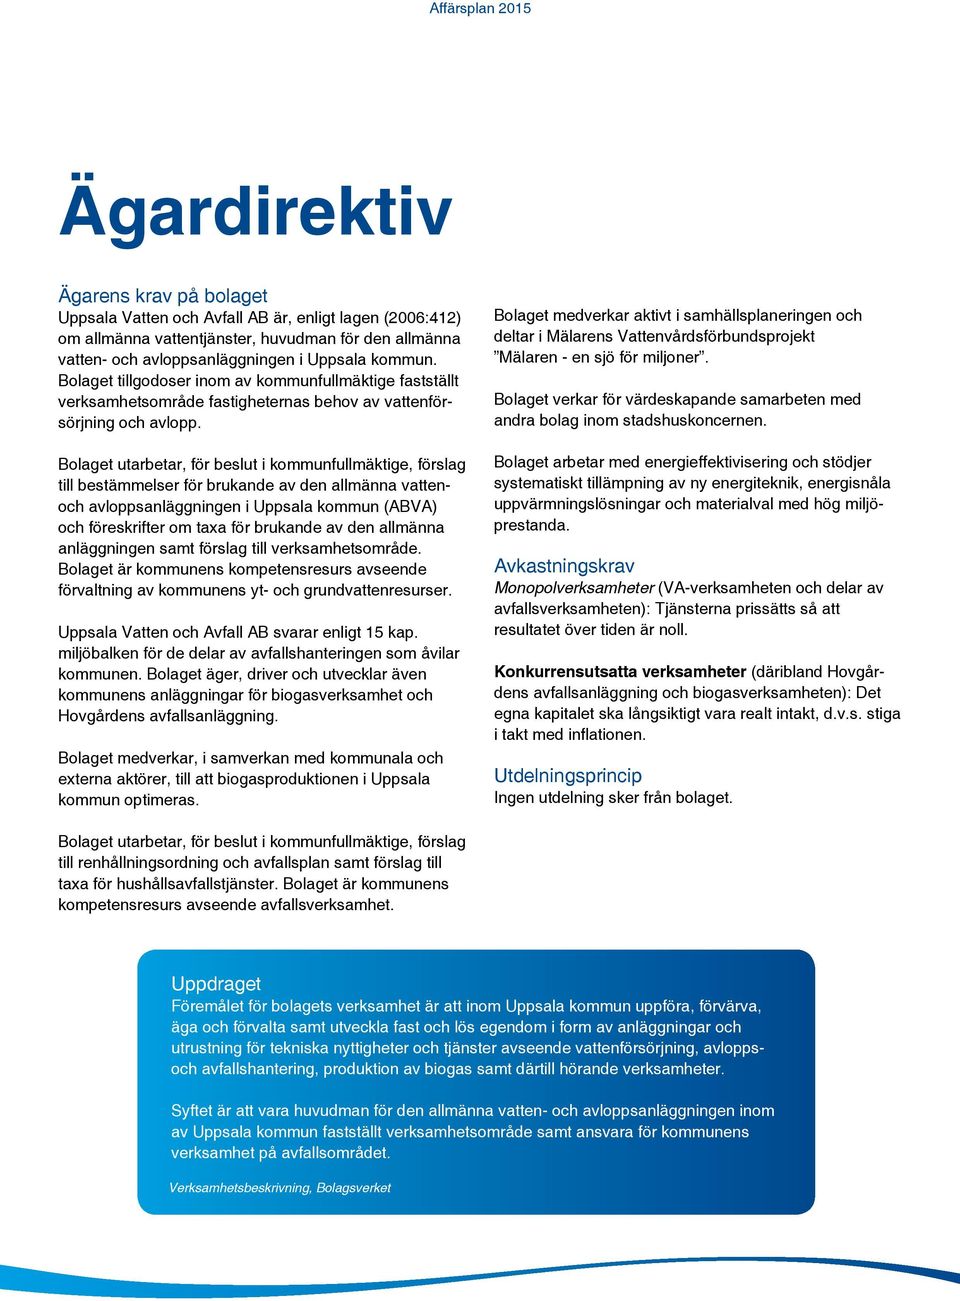 Bolaget utarbetar, för beslut i kommunfullmäktige, förslag till bestämmelser för brukande av den allmänna vattenoch avloppsanläggningen i Uppsala kommun (ABVA) och föreskrifter om taxa för brukande